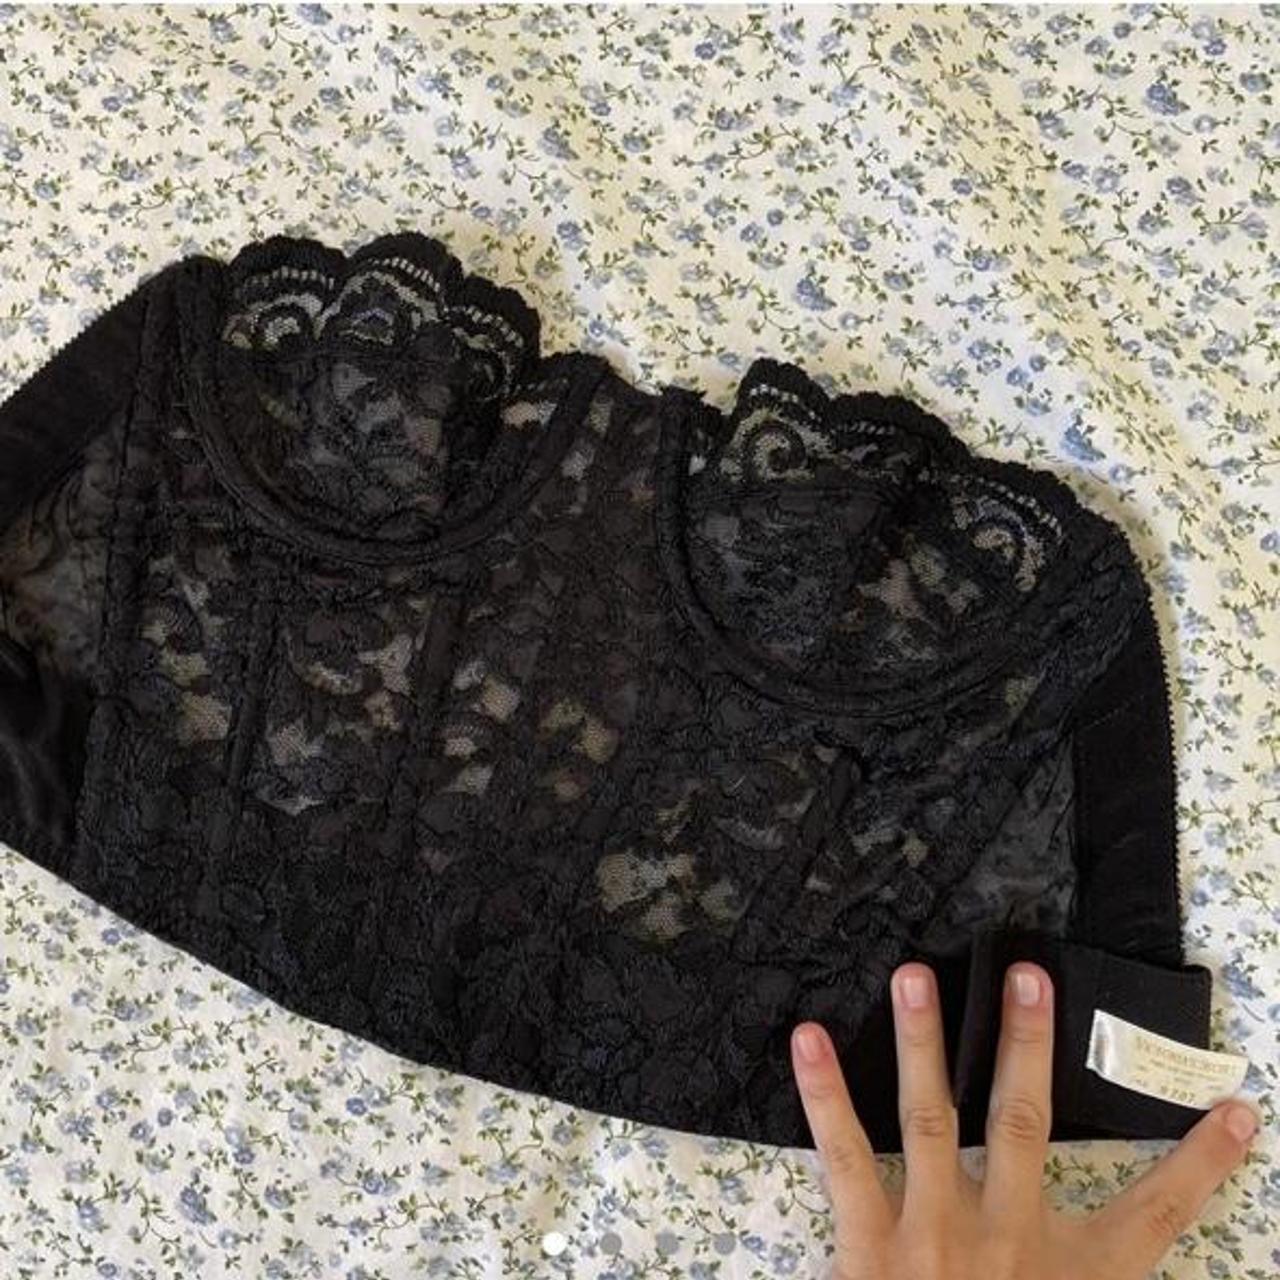 Victorias Secret Vintage Black corset top with - Depop